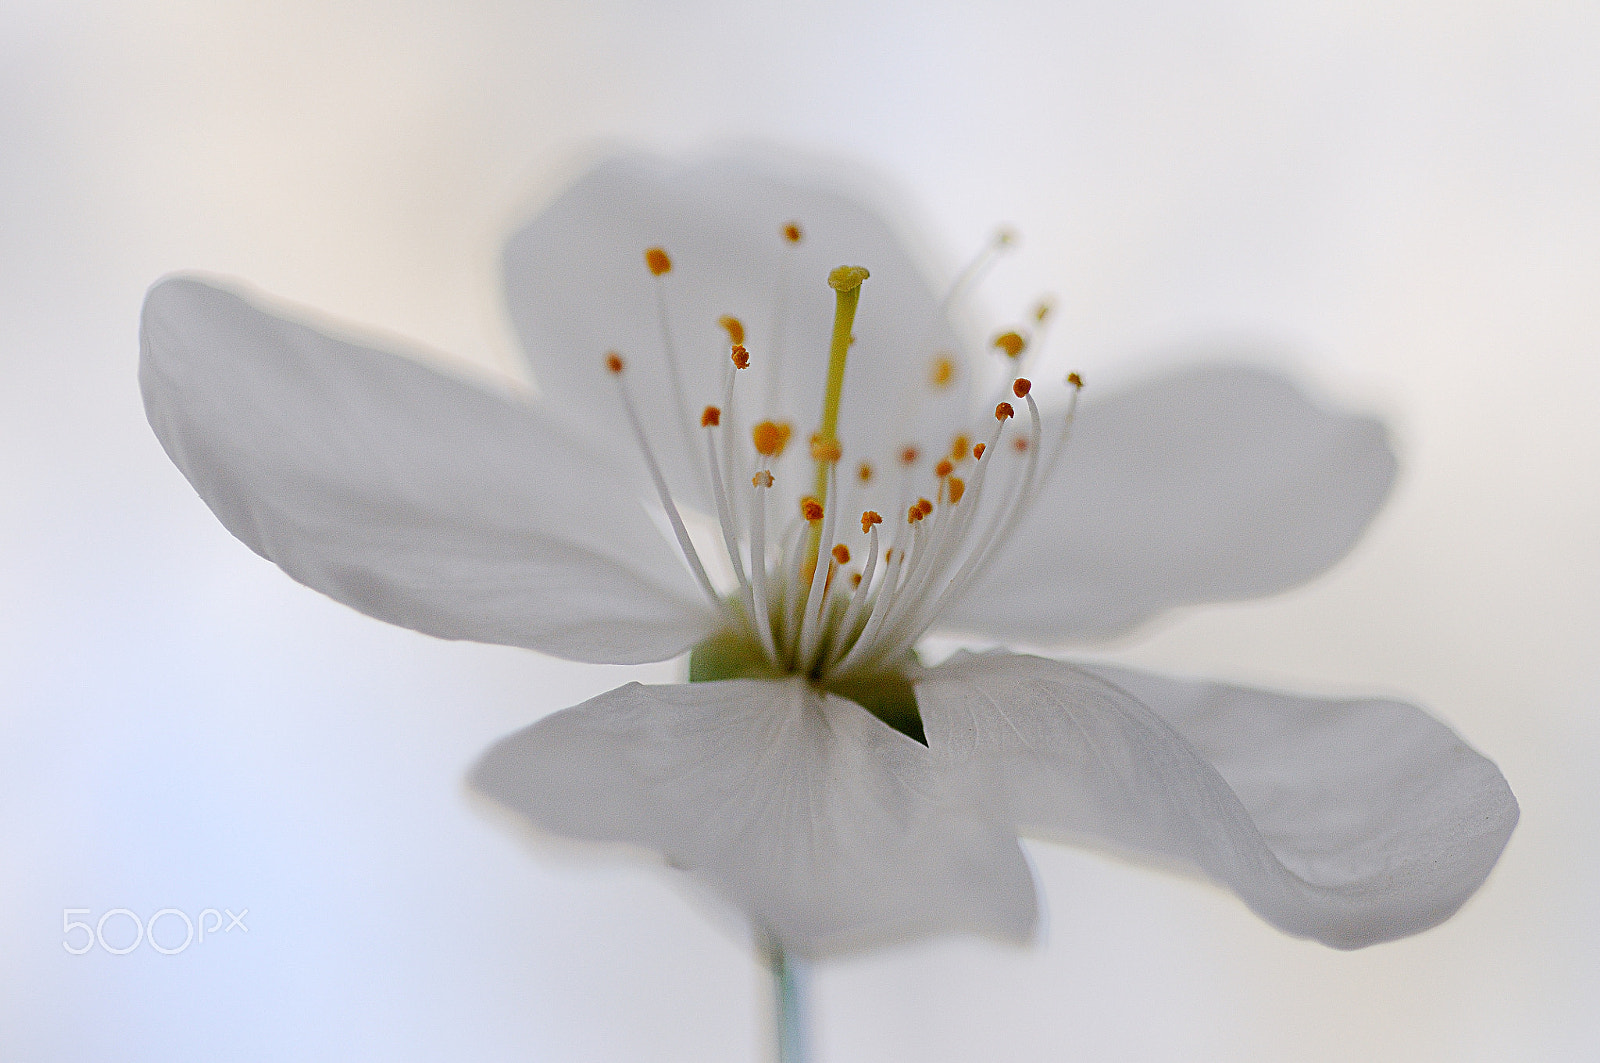 Nikon D300 sample photo. Fleur de cerisier photography